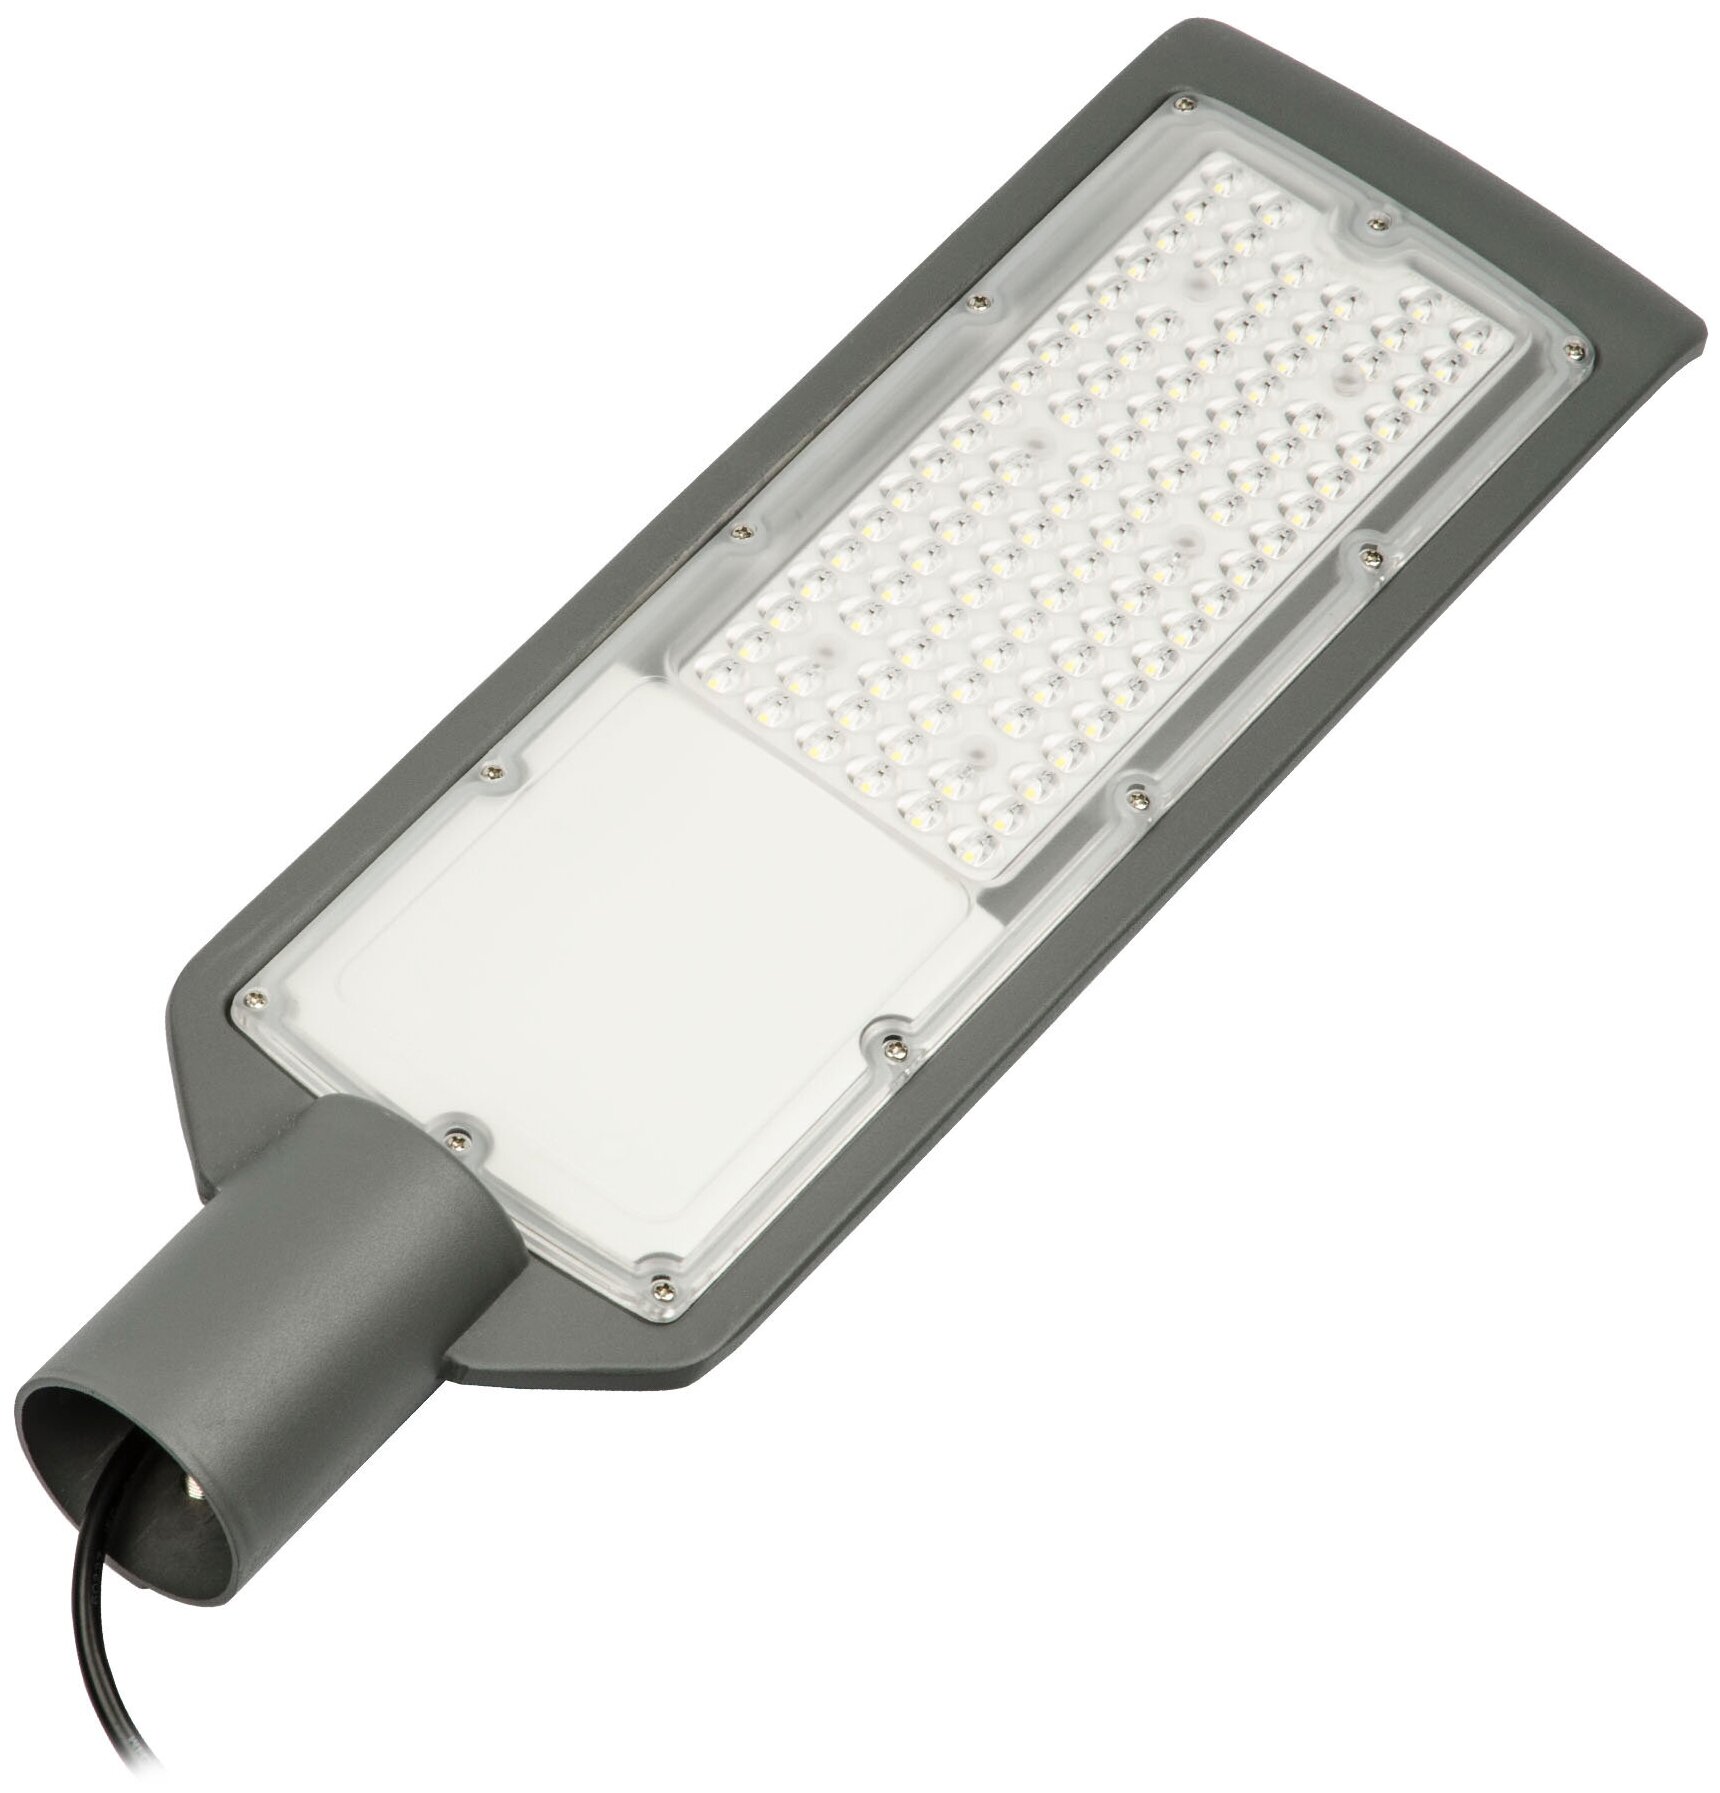 ULV-Q610 100W-6500К IP65 BLACK Светильник-прожектор светодиодный для уличного освещения. Консольный. Дневной свет 6500К. Угол 120 градусов. TM Volpe